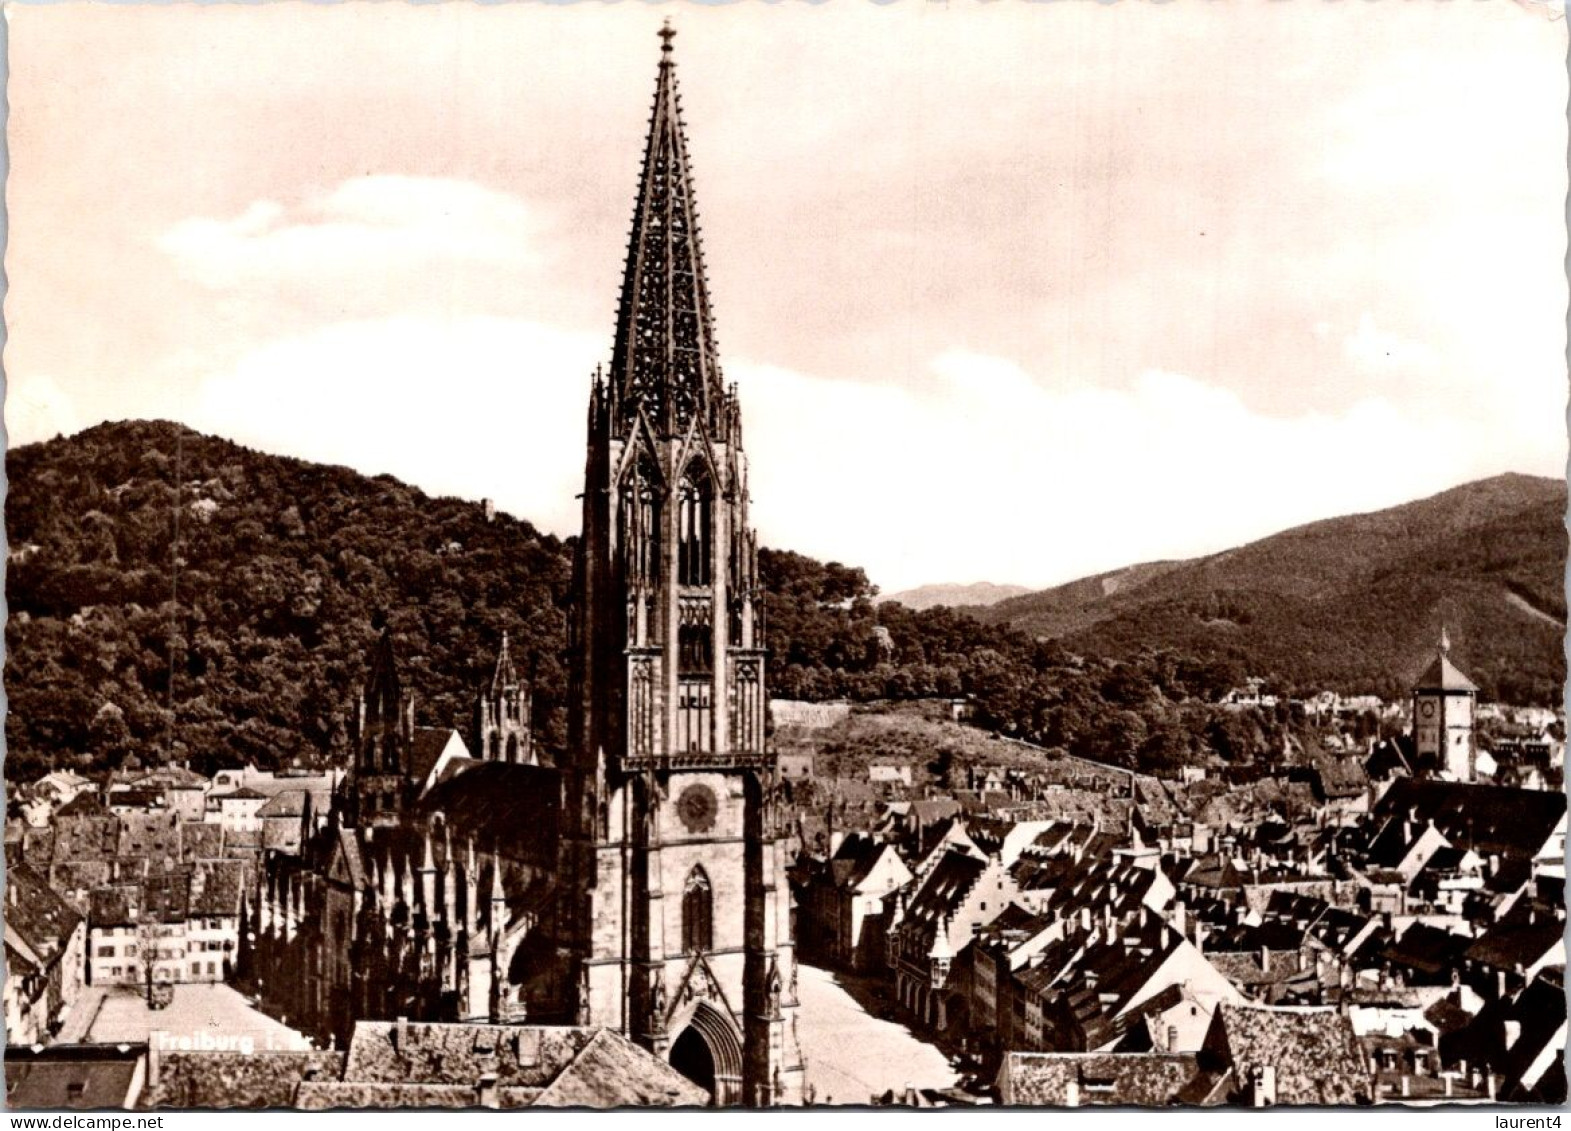 1895-2024 (5 Z 33) Germany ? Austria ? Switzerland ? Church (b/w) - Churches & Cathedrals